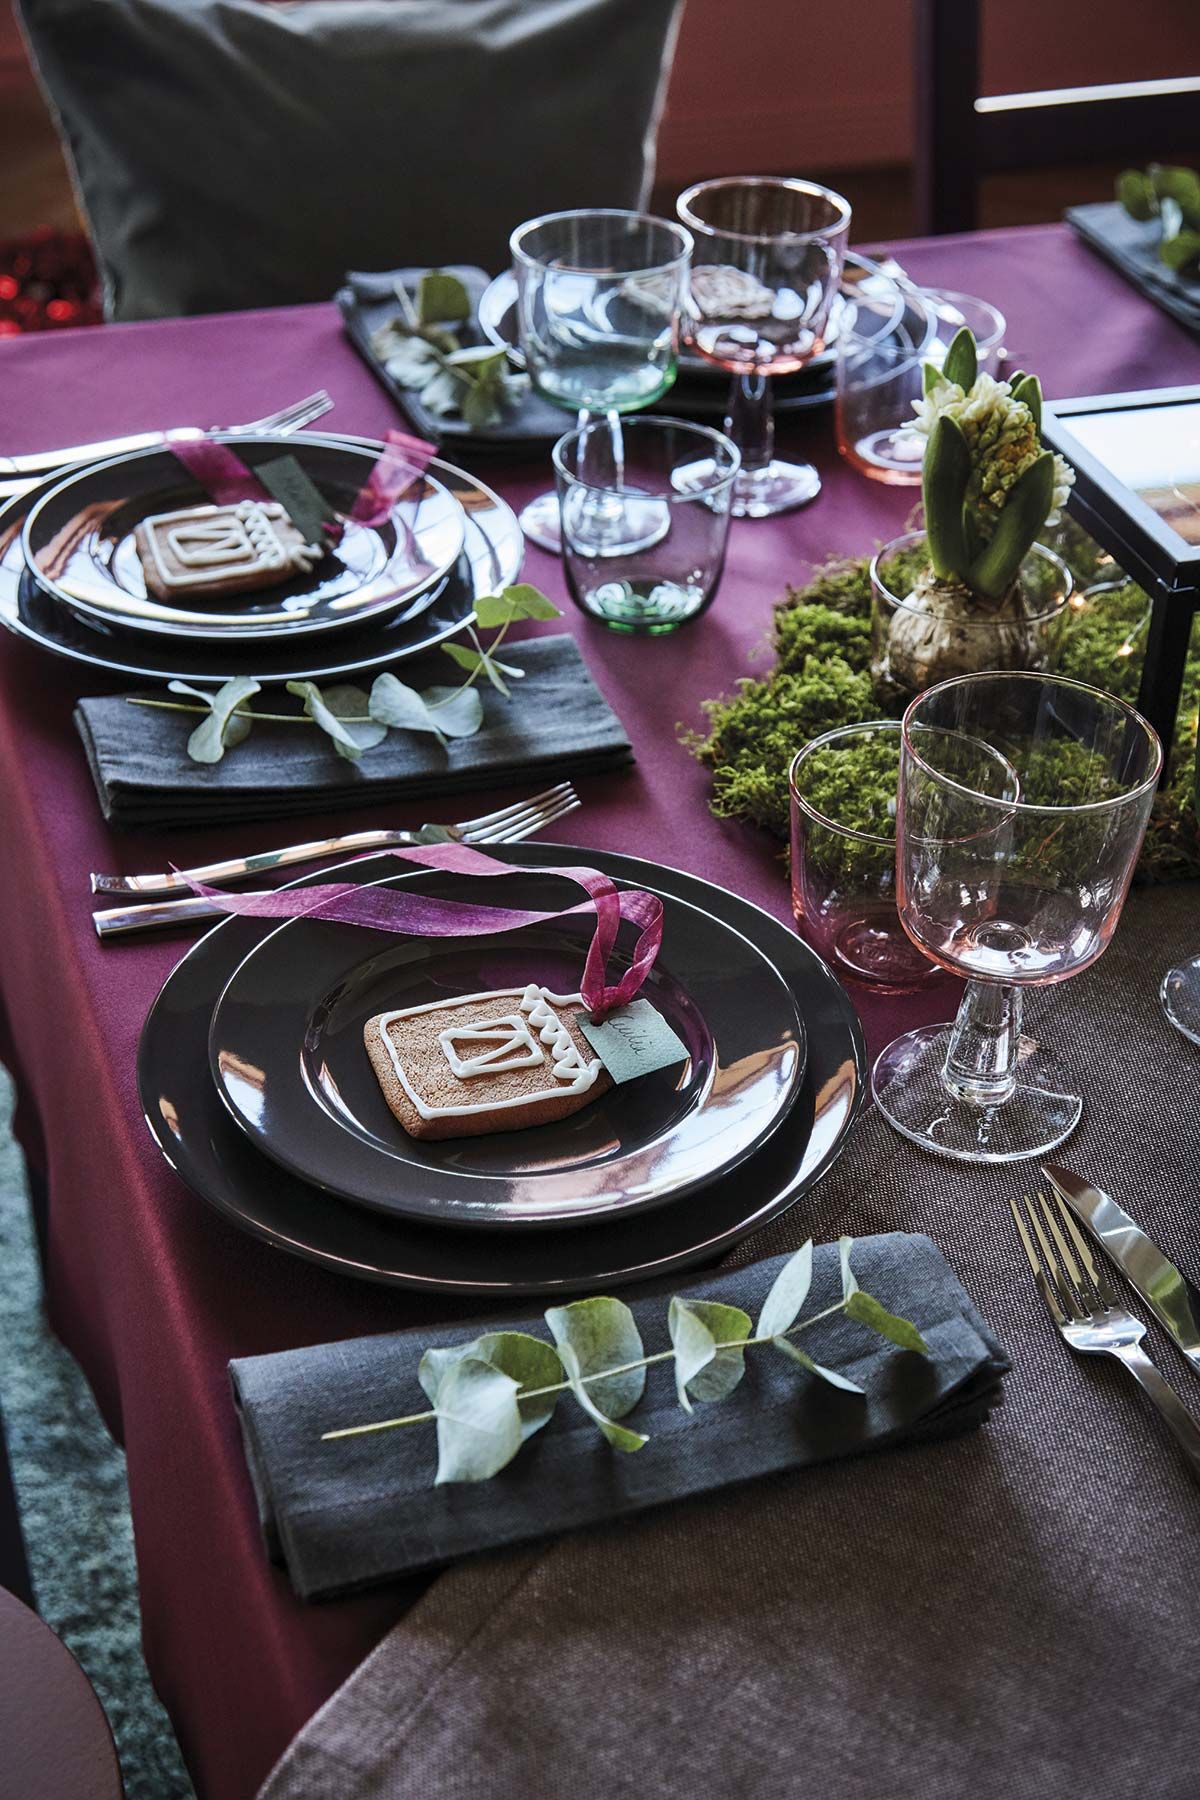 Viste tu mesa con el menaje más bonito y delicado - Una presentación  fantástica en tu mesa